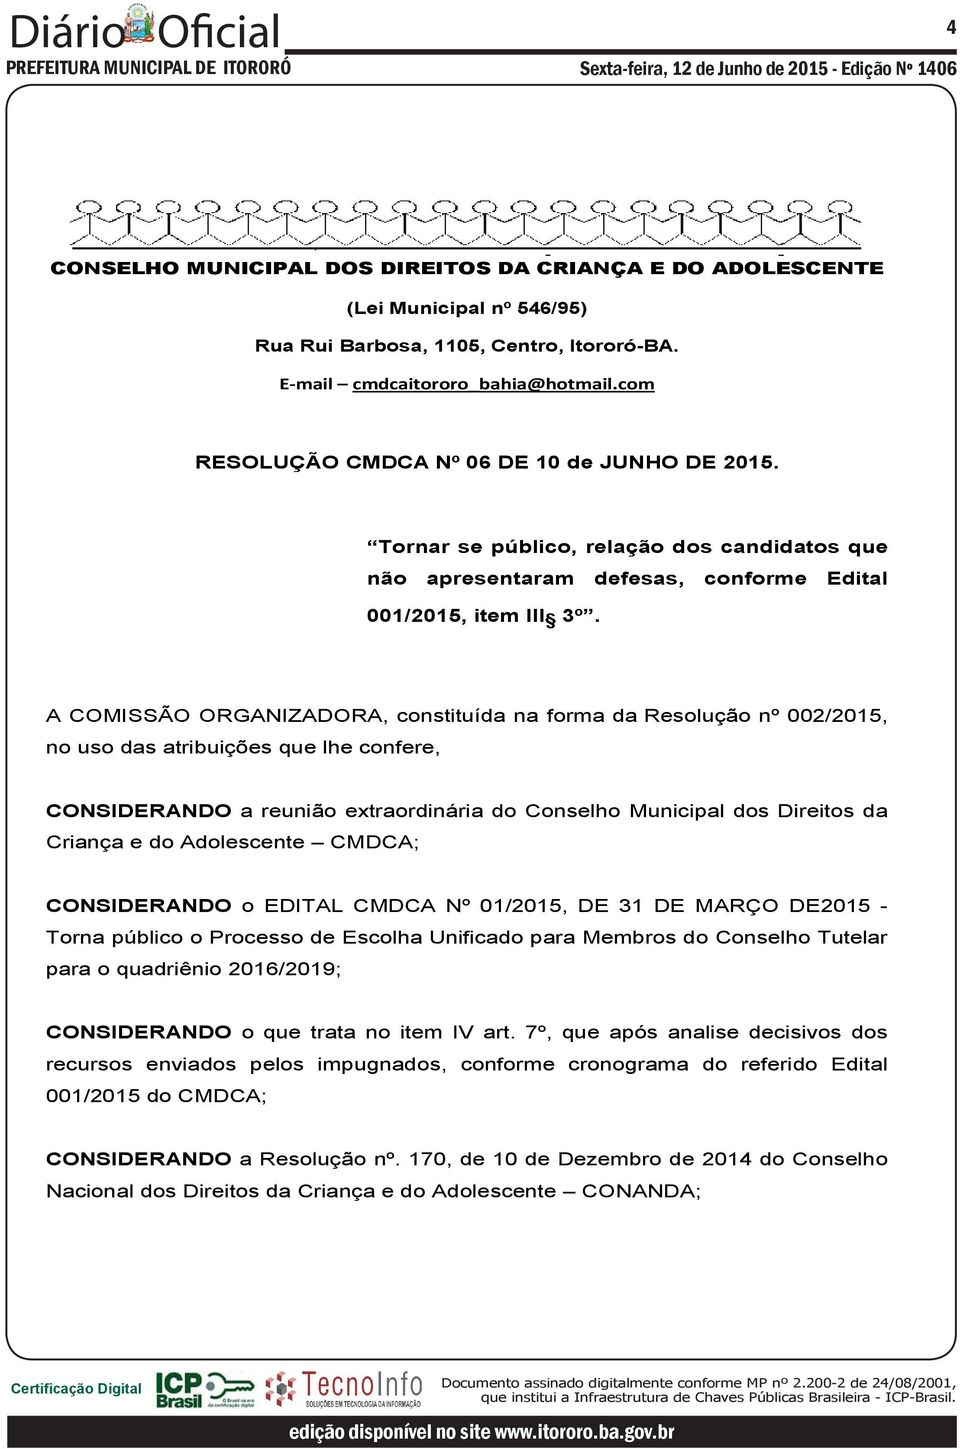 A COMISSÃO ORGANIZADORA, constituída na forma da Resolução nº 002/2015, no uso das atribuições que lhe confere, CONSIDERANDO a reunião extraordinária do Conselho Municipal dos Direitos da Criança e